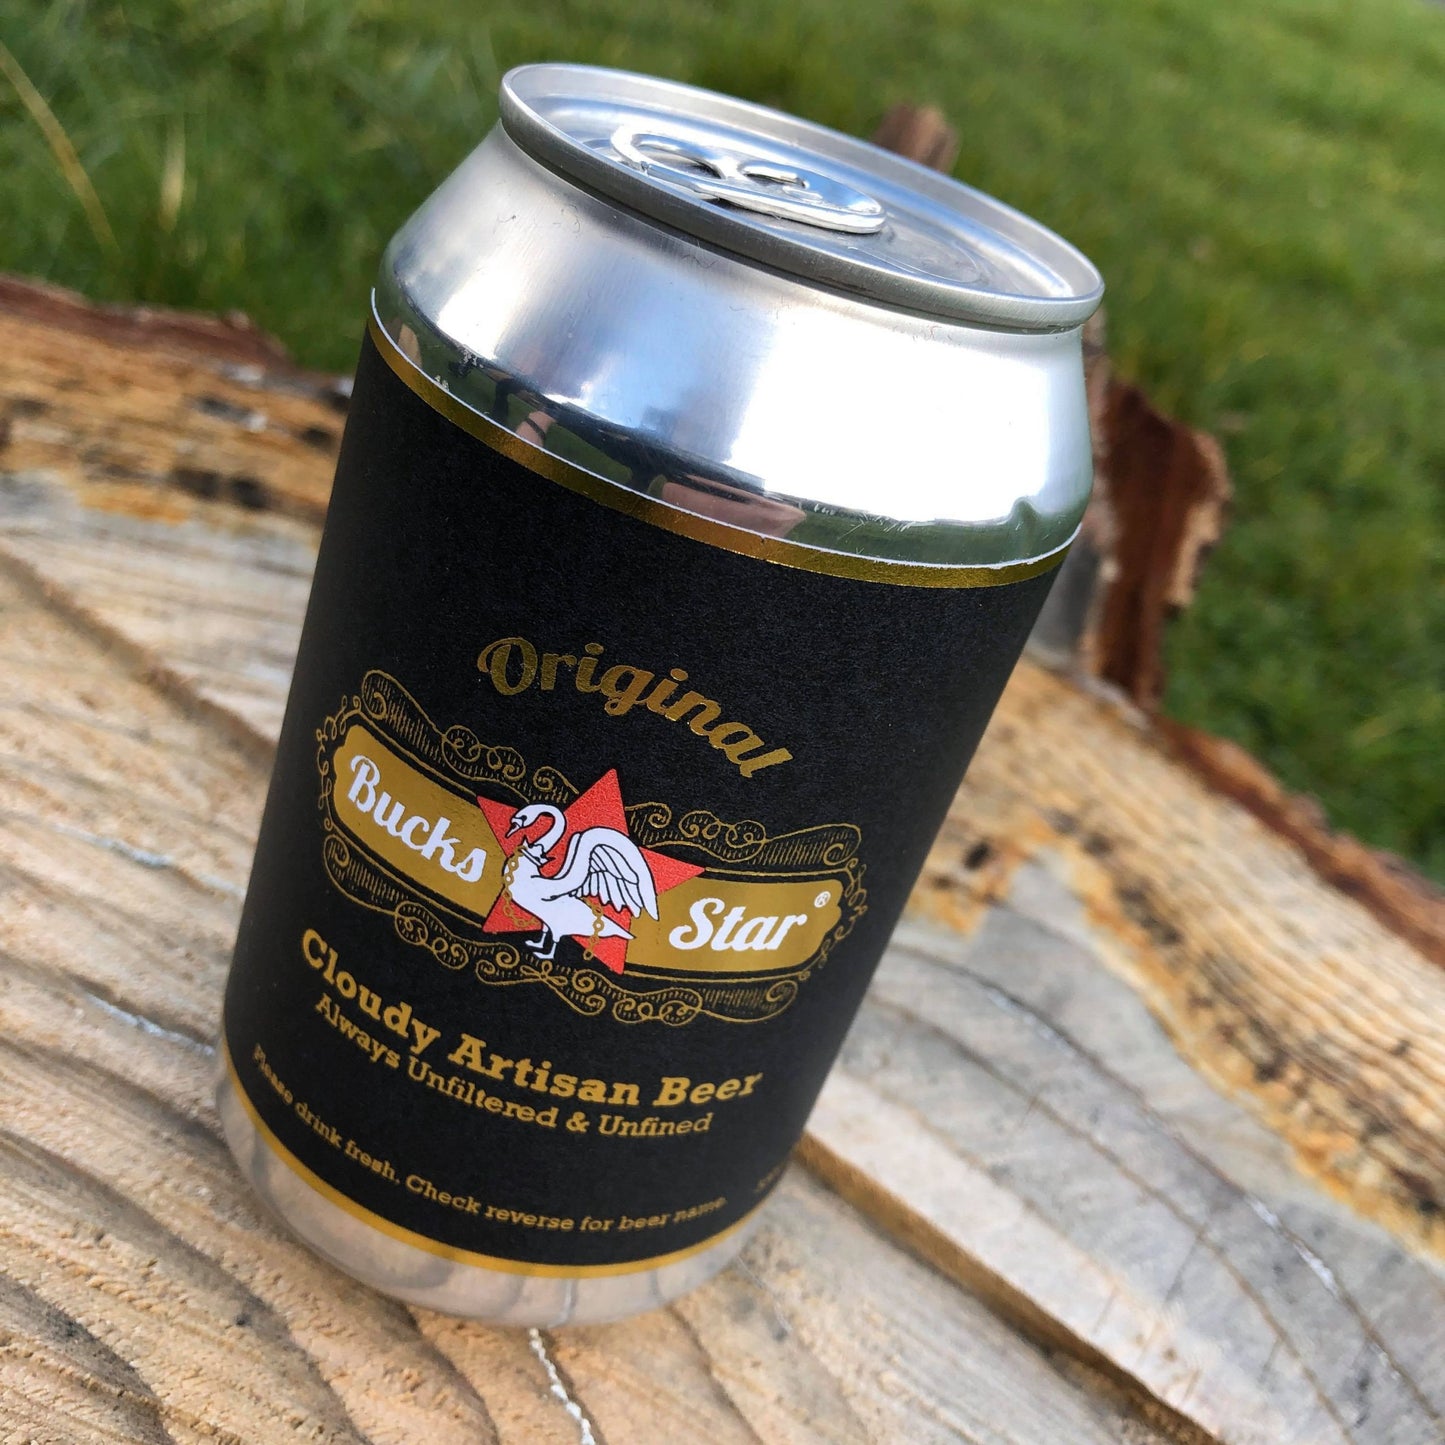 Bucks Star Beer 'No. 1' Pale Ale 330ml, 4%